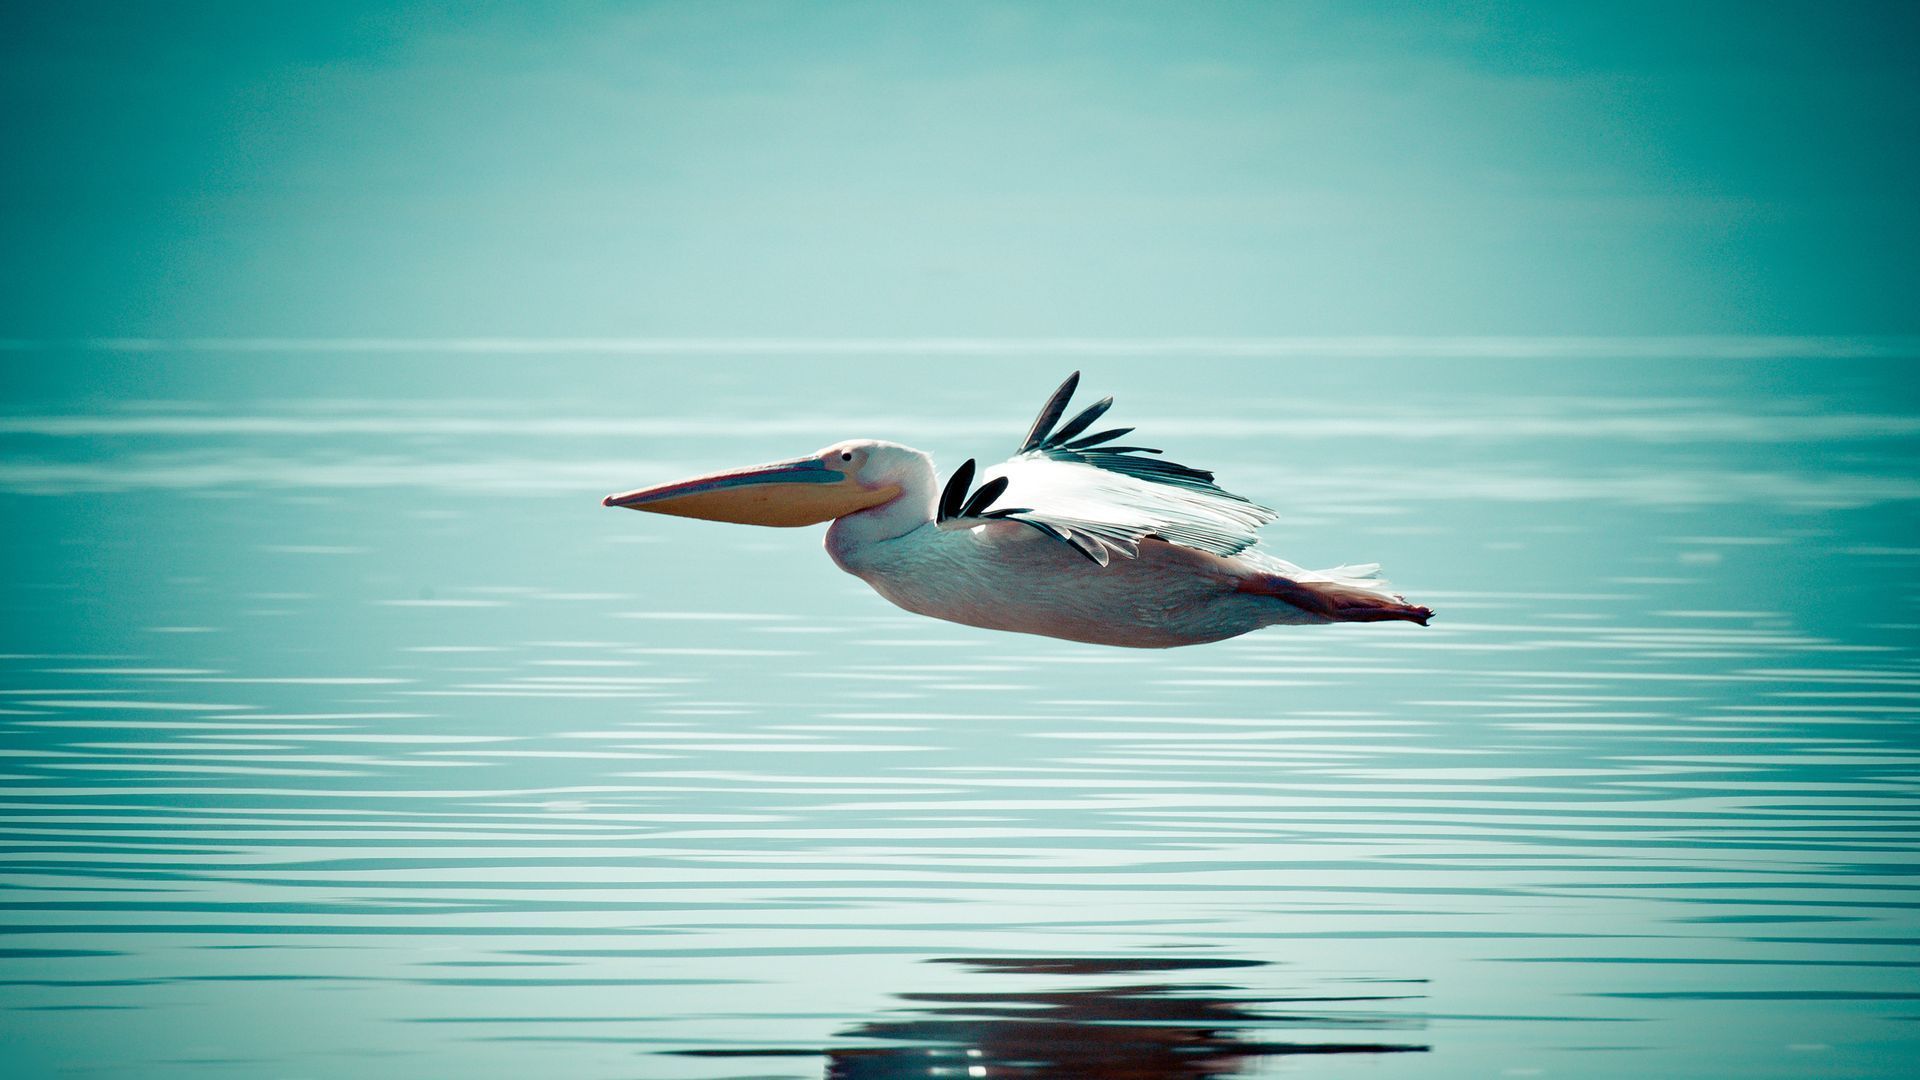 Pelican download wallpaper image